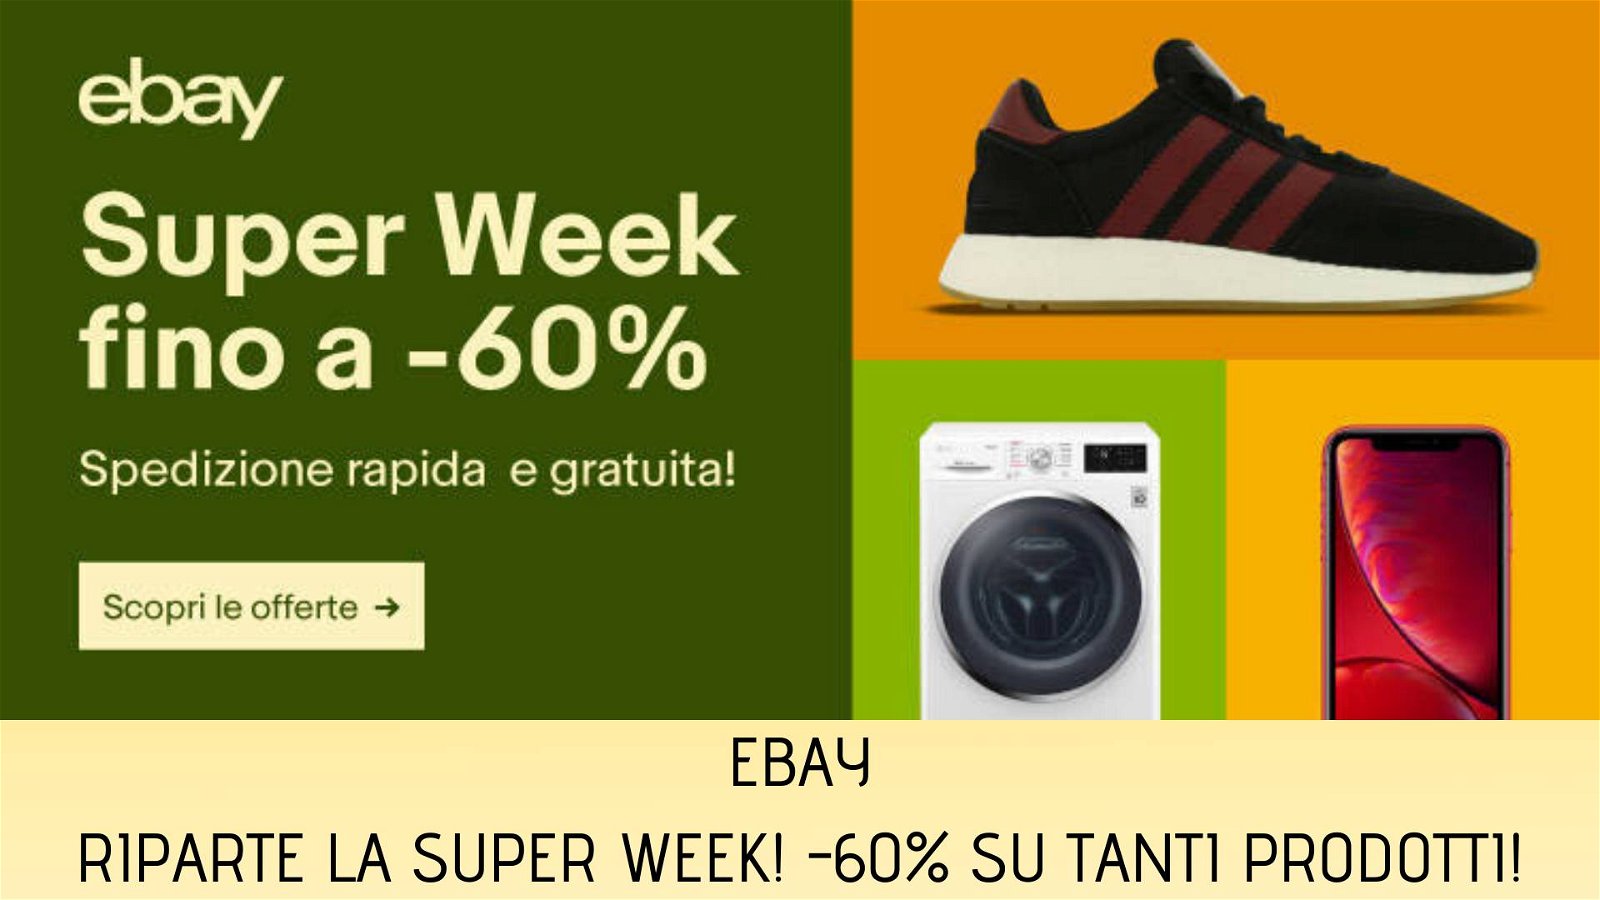 Immagine di eBay Super Week, sconti fino al 60% su tantissimi prodotti